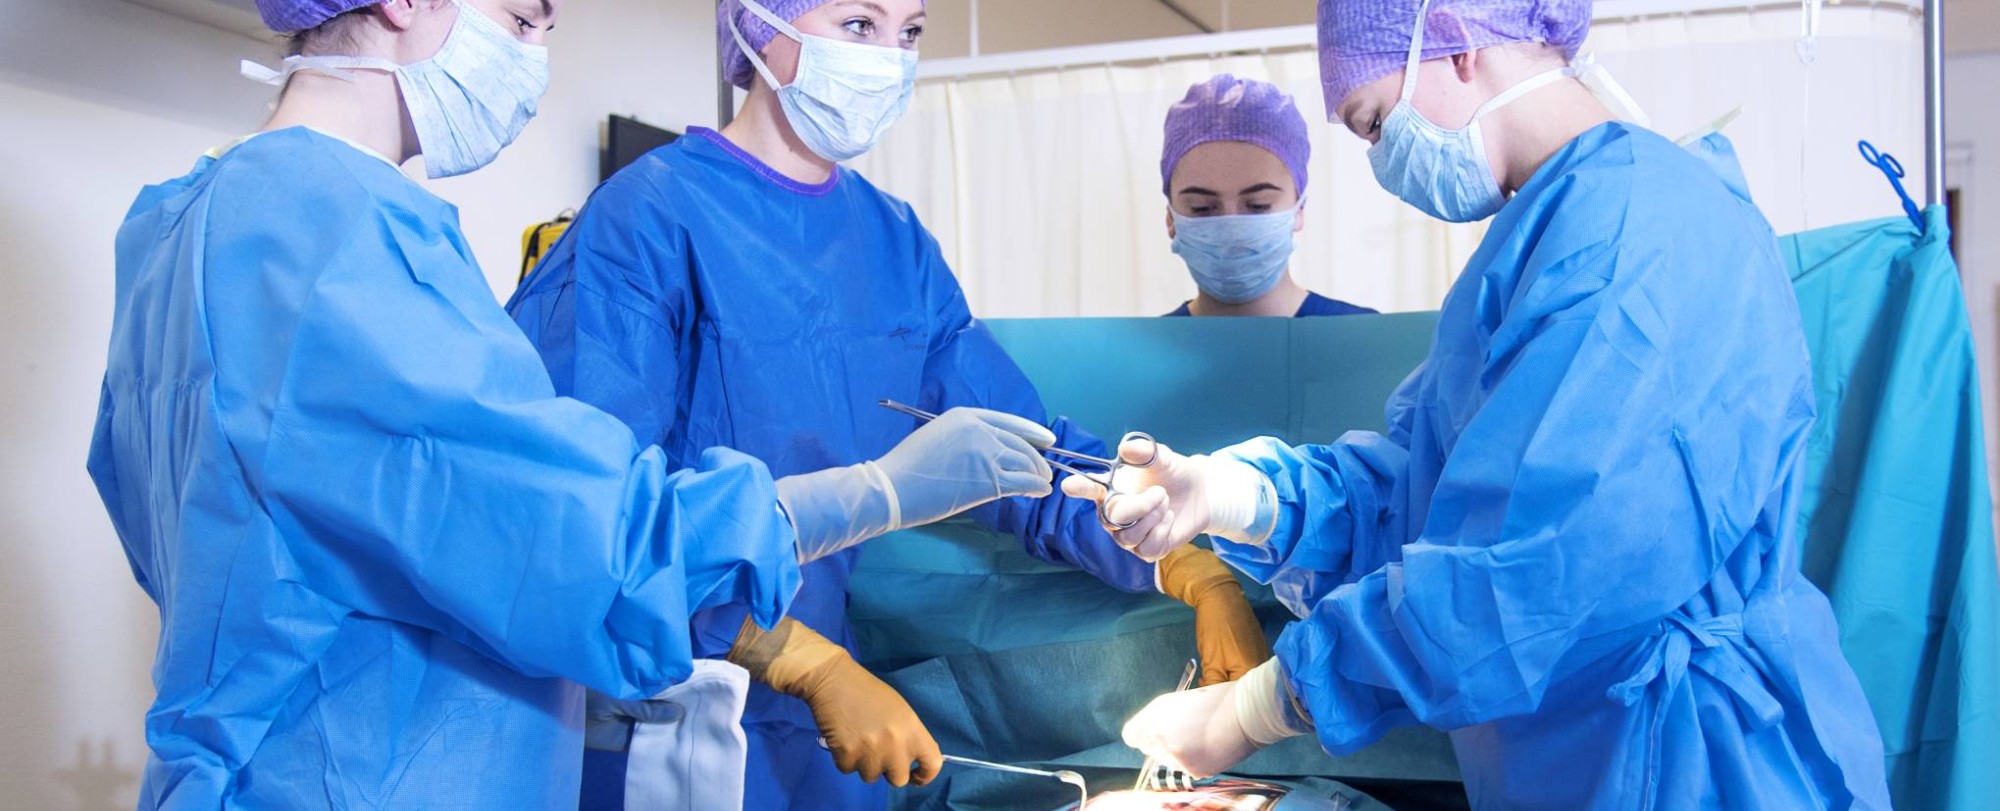 Hulpverlening studenten oefenen operatie zonder docent